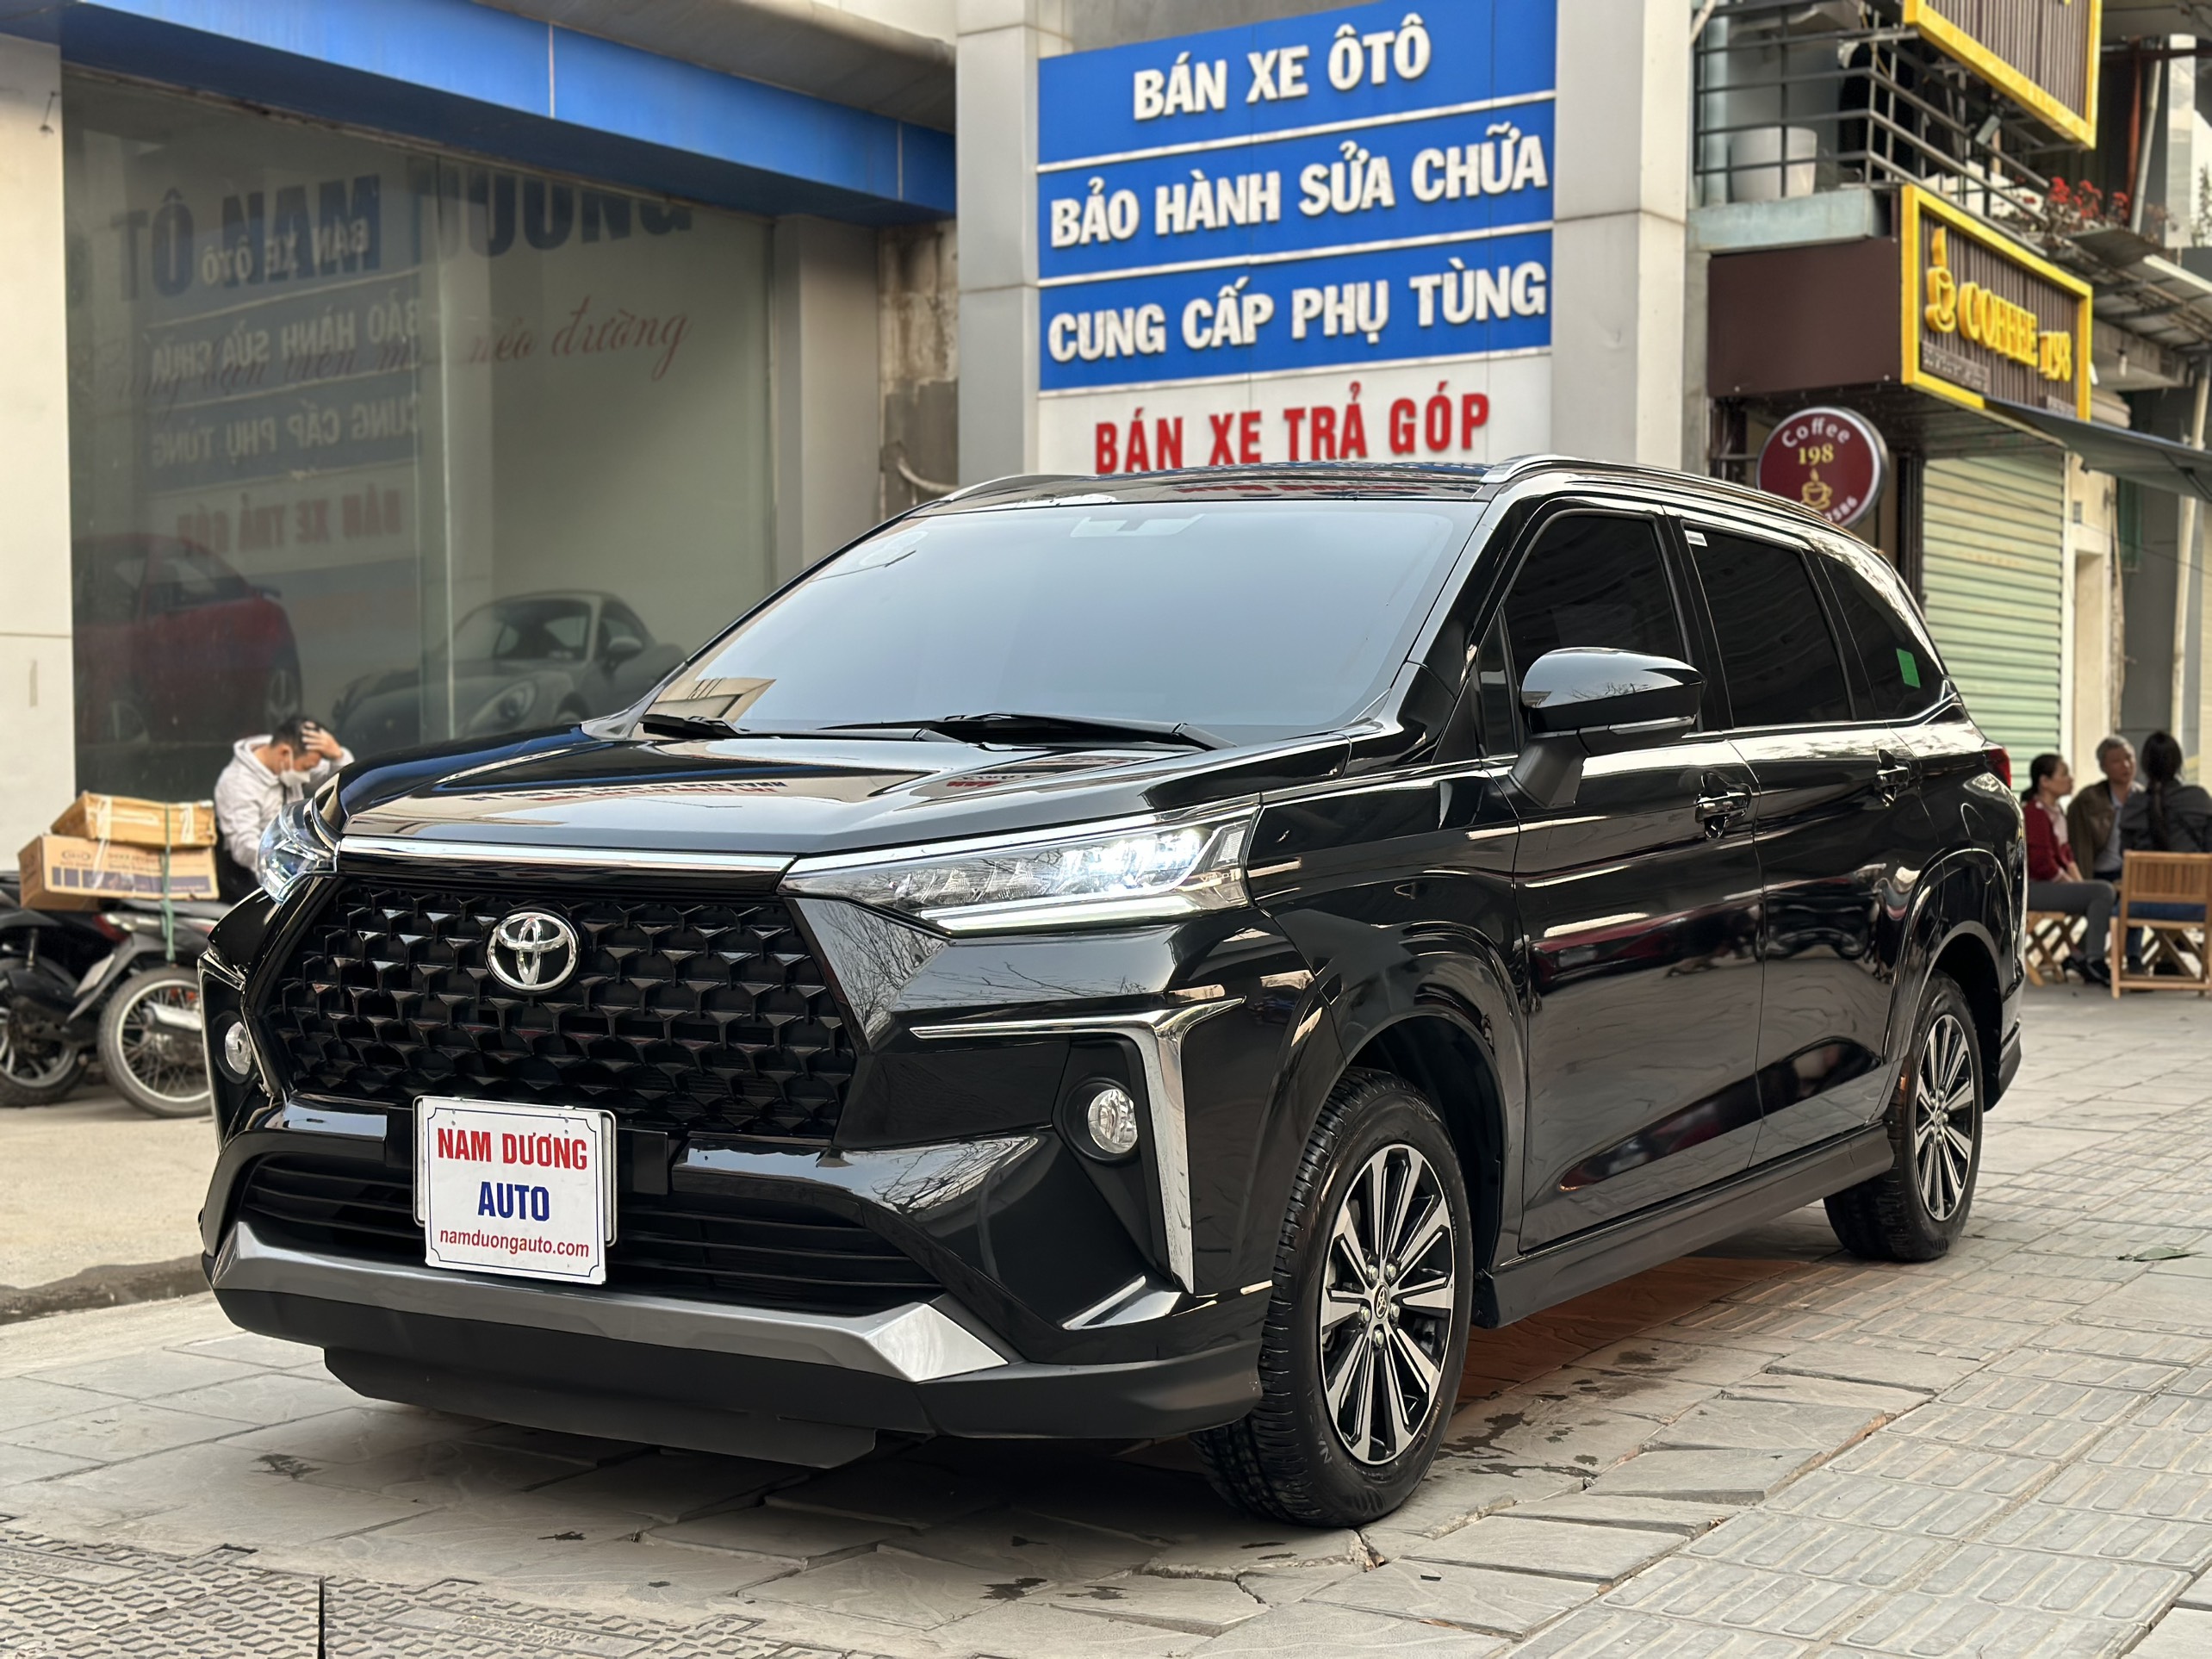 CEO Nam Dương Auto thổ lộ chiến lược kinh doanh xe cũ có 1 không 2